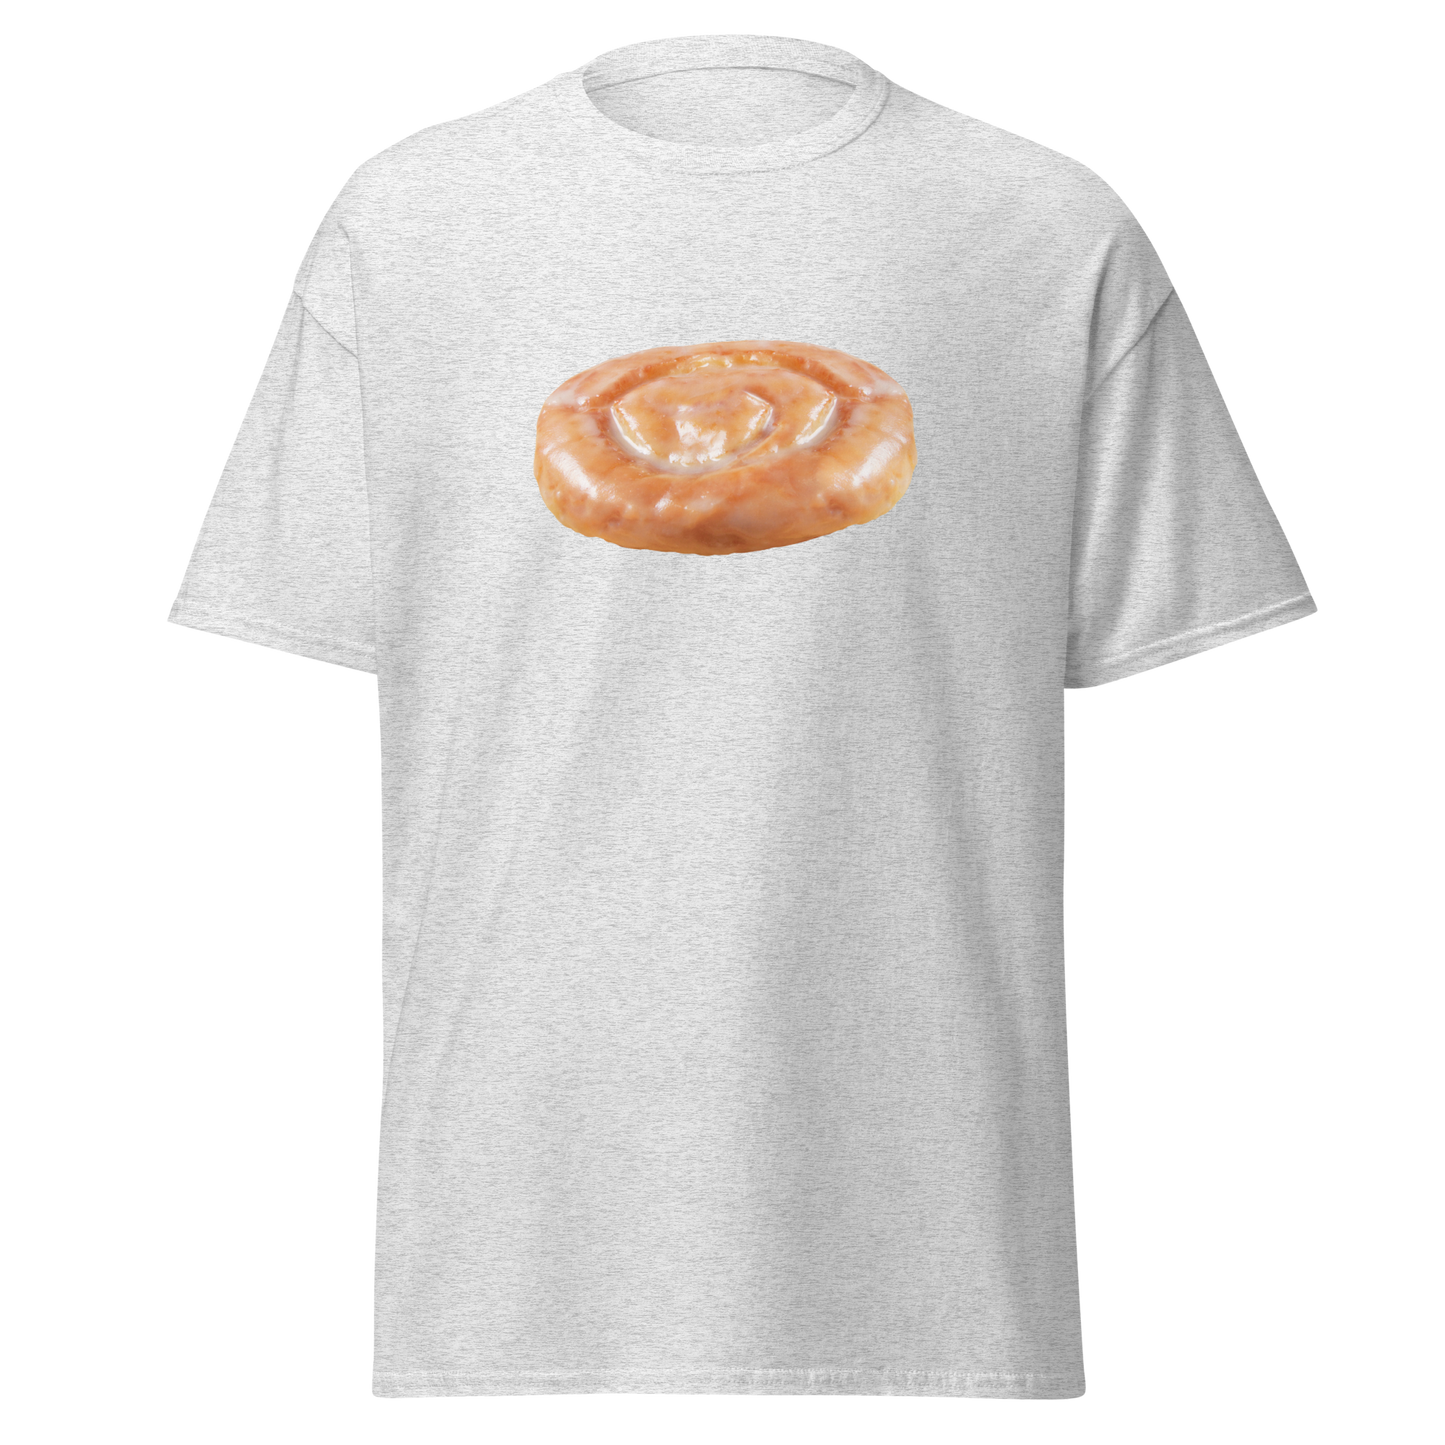 Honey Bun T-Shirt